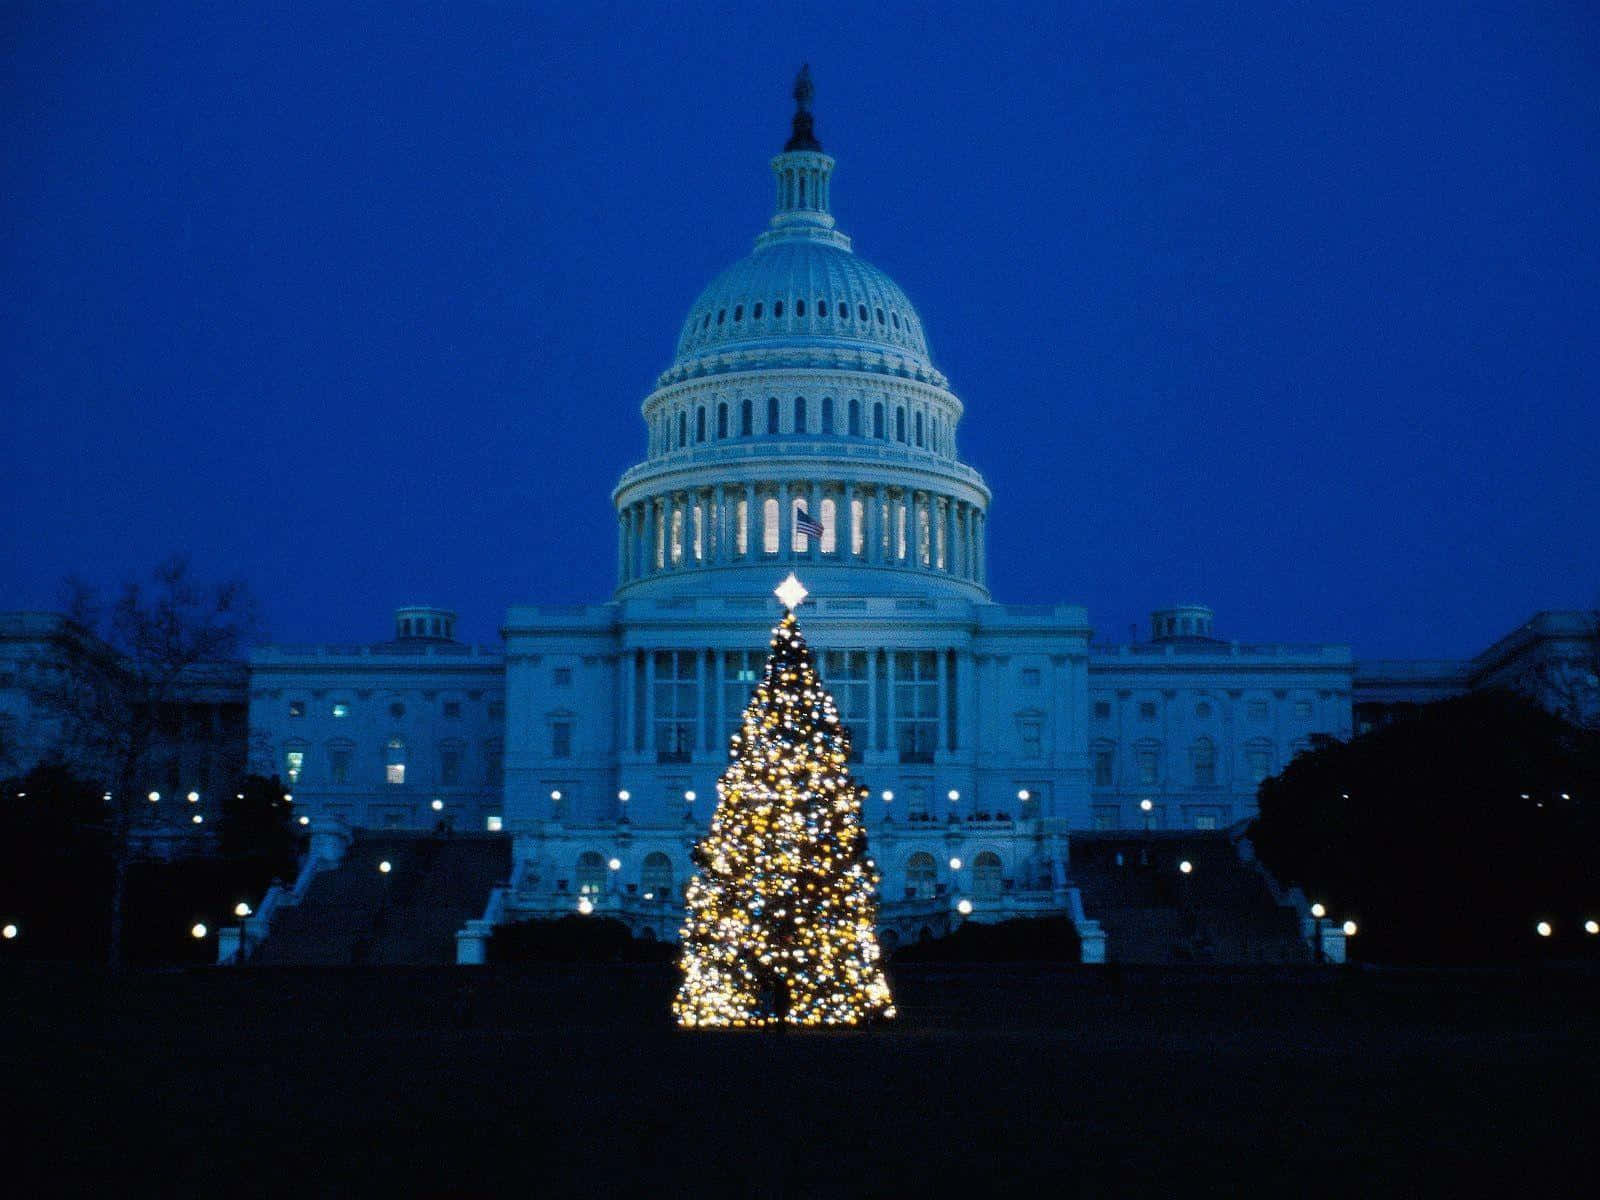 "Striking view of White House in Washington DC"